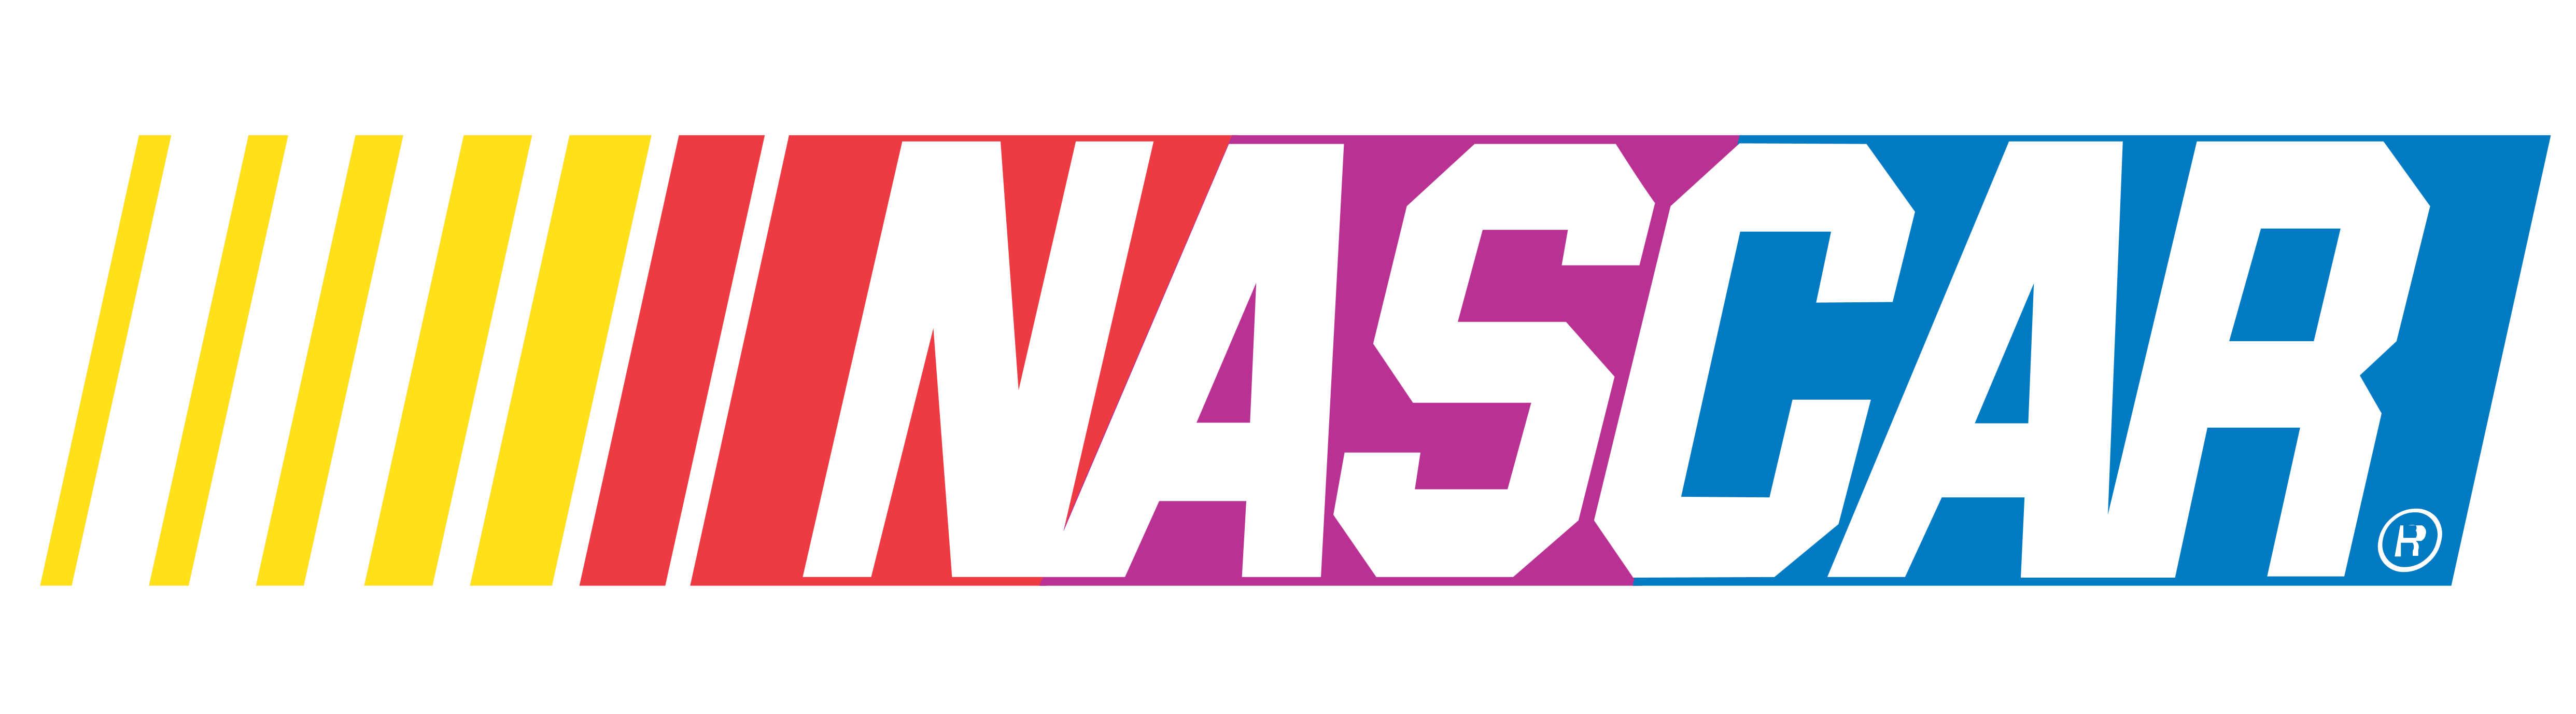 NASCAR Logo - NASCAR – Logos Download